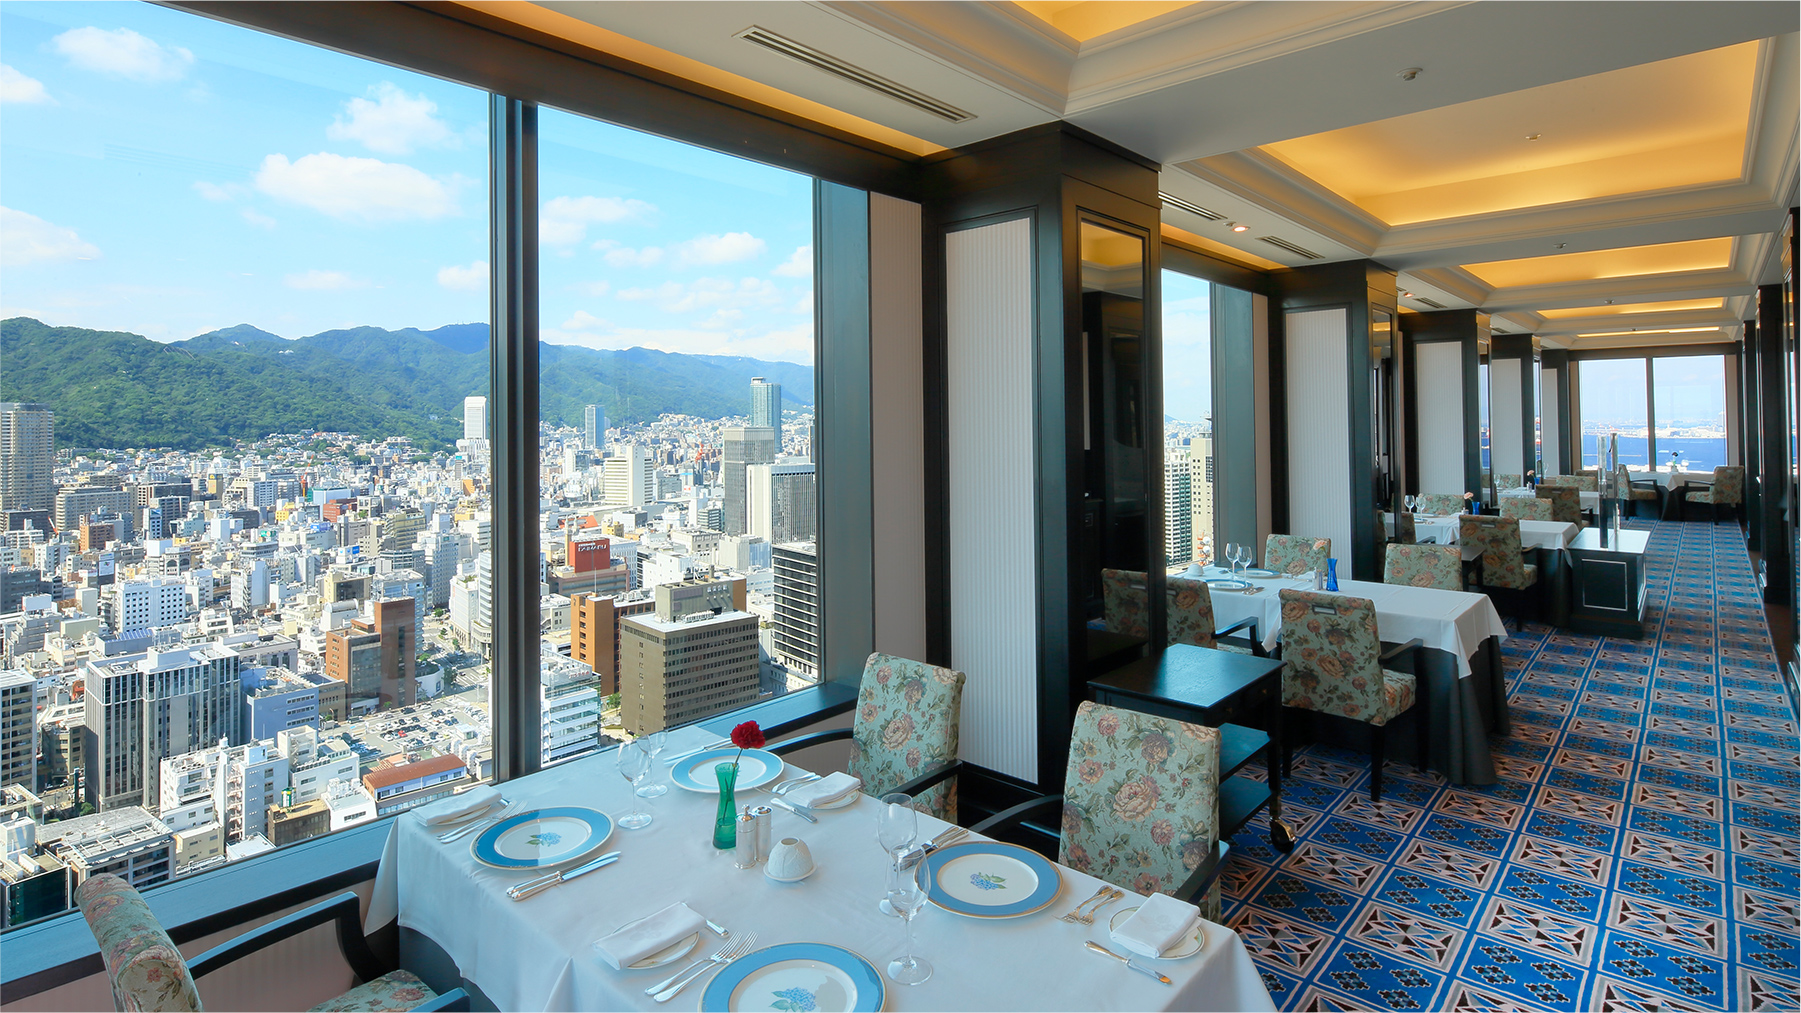 フランス料理レストラン エメラルド 神戸三宮のランドマークホテル ホテルオークラ神戸 公式